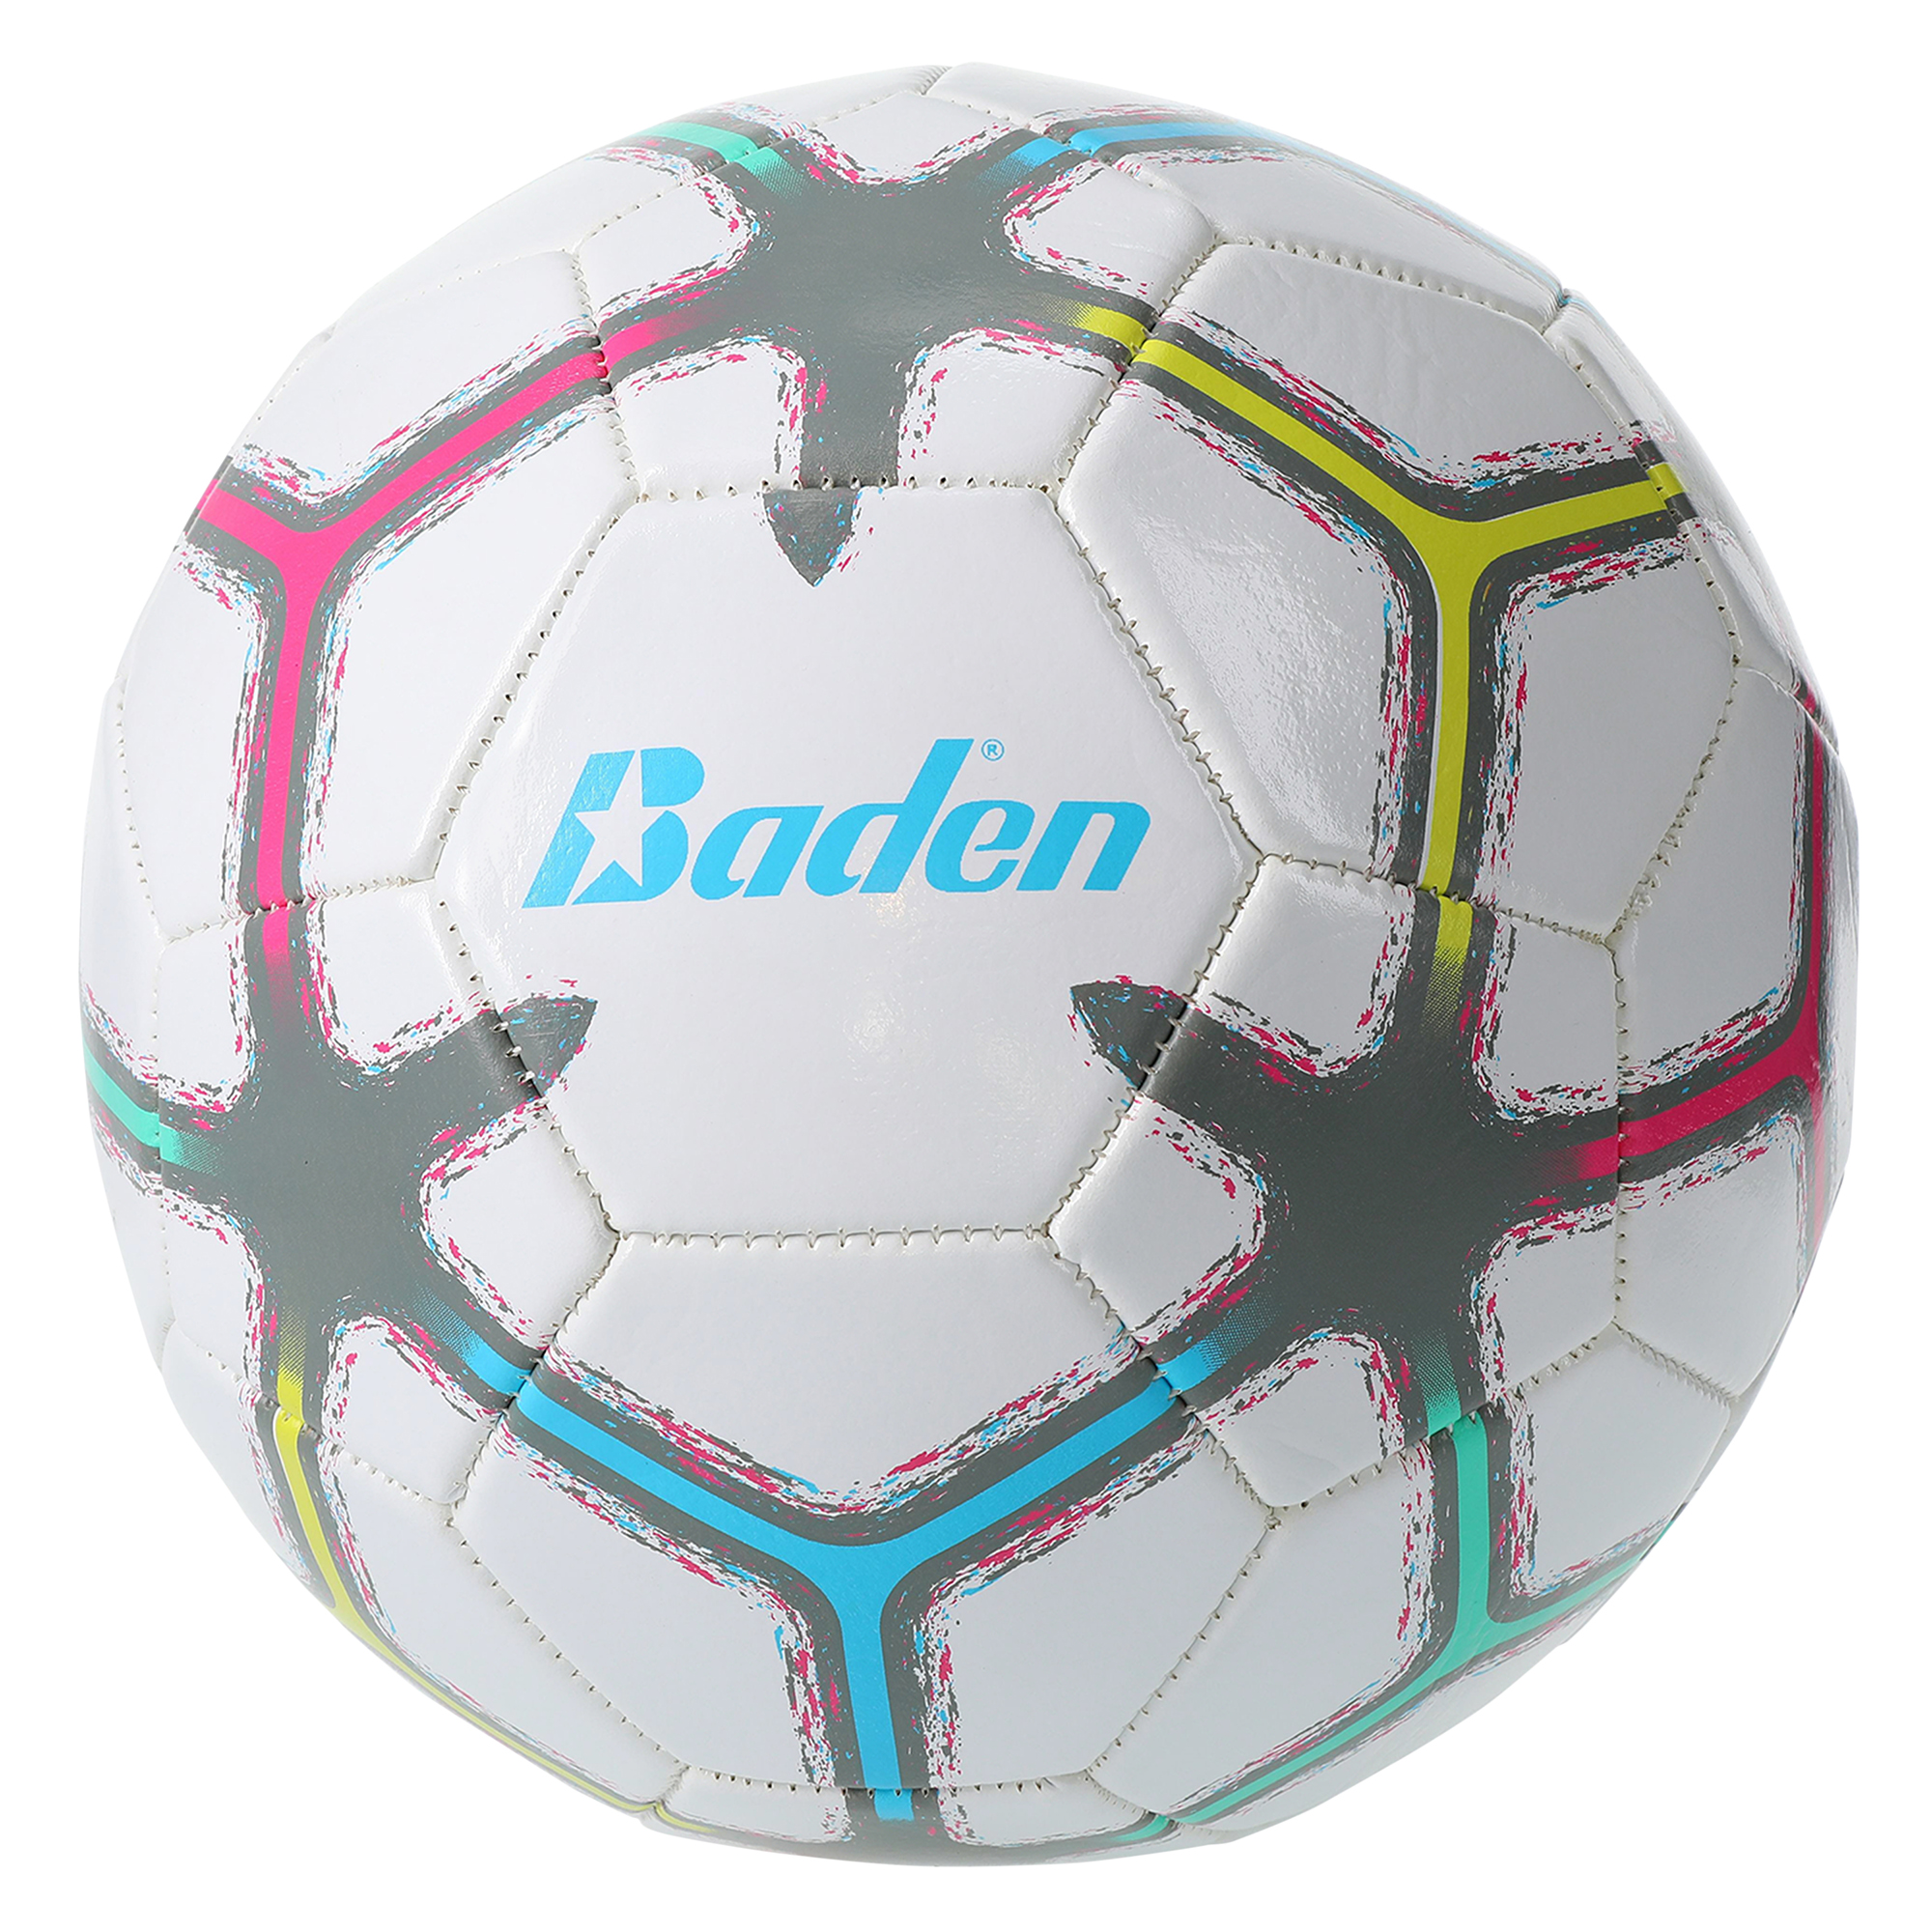 baden® retro soccer ball, size 5